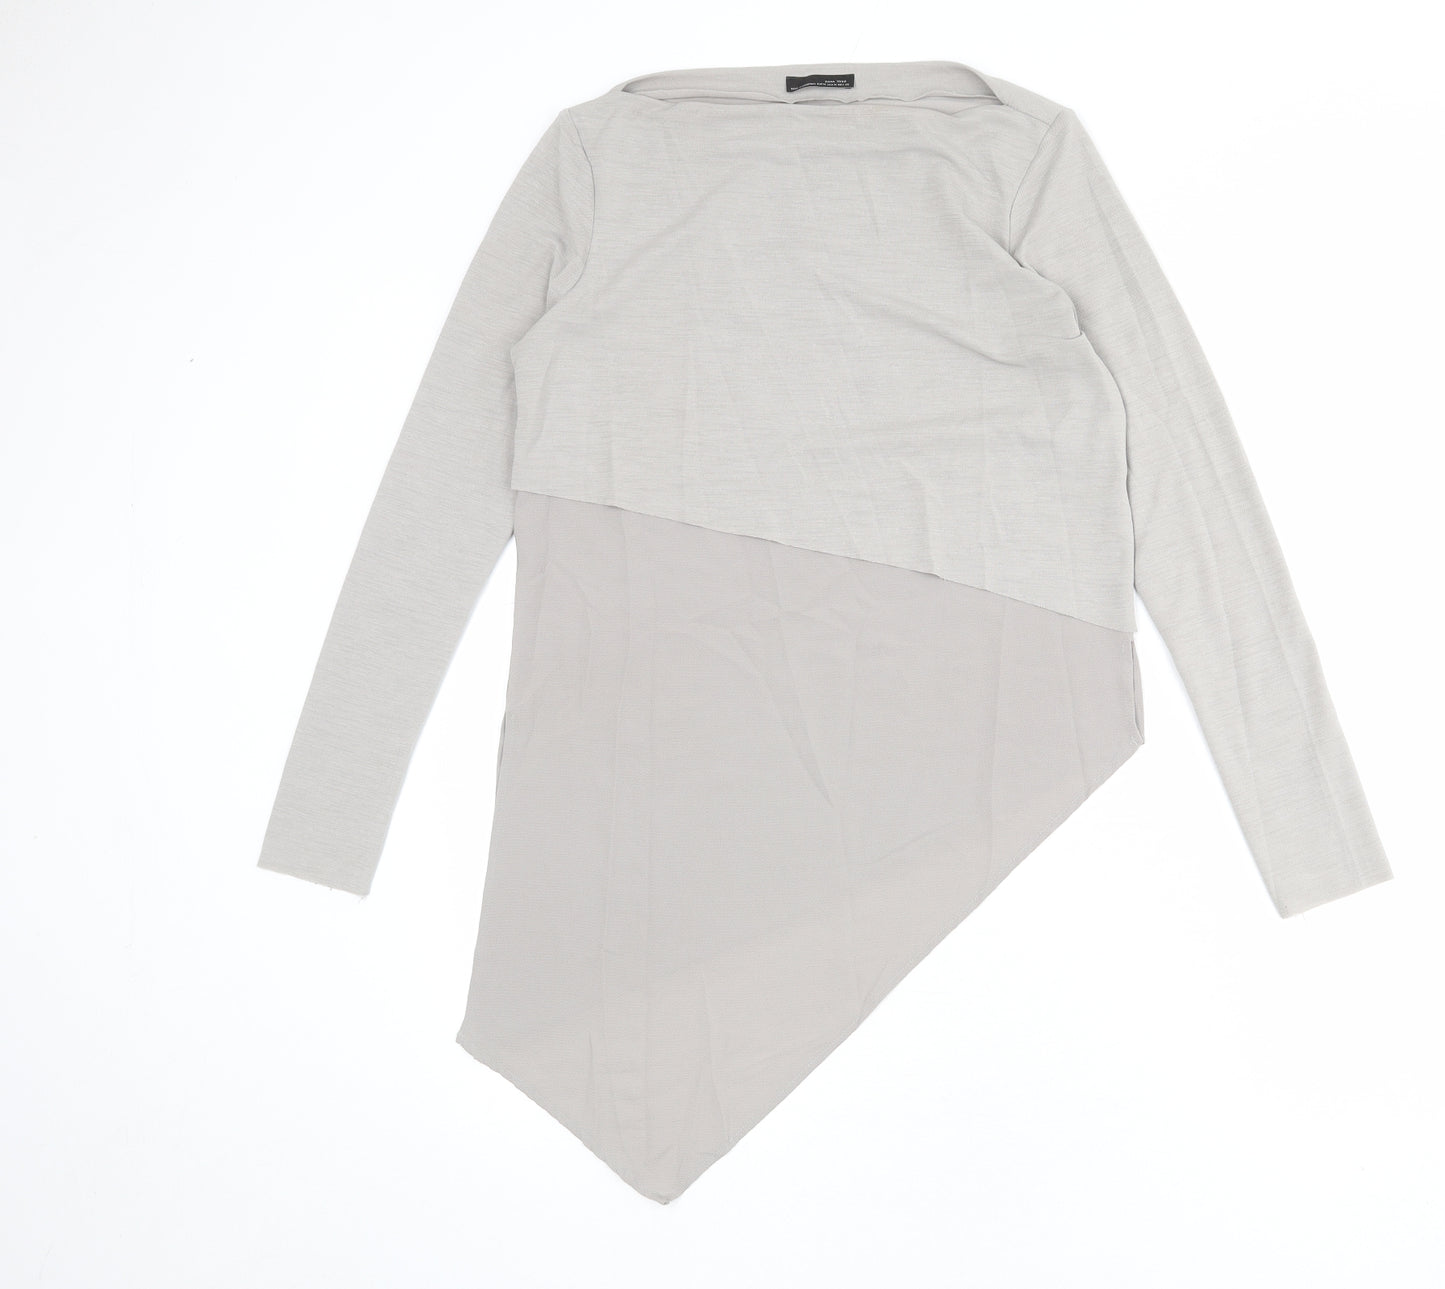 Zara Womens Grey Polyester Basic T-Shirt Size M Boat Neck